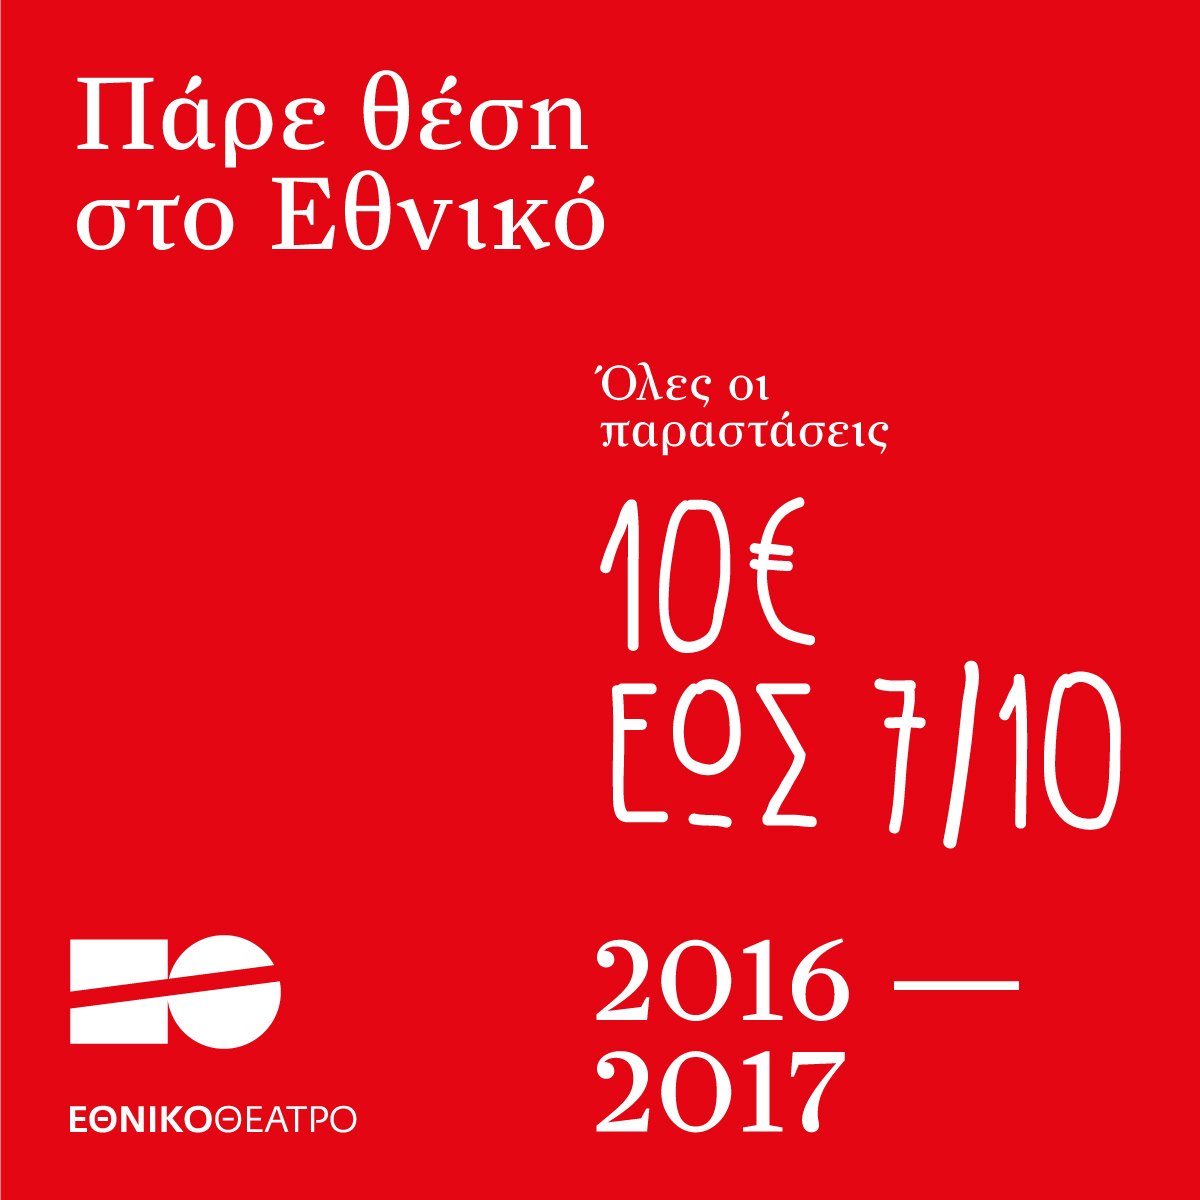 Εισιτήρια 10 ευρώ για όλες τις παραστάσεις της χρονιάς από το Εθνικό Θέατρο